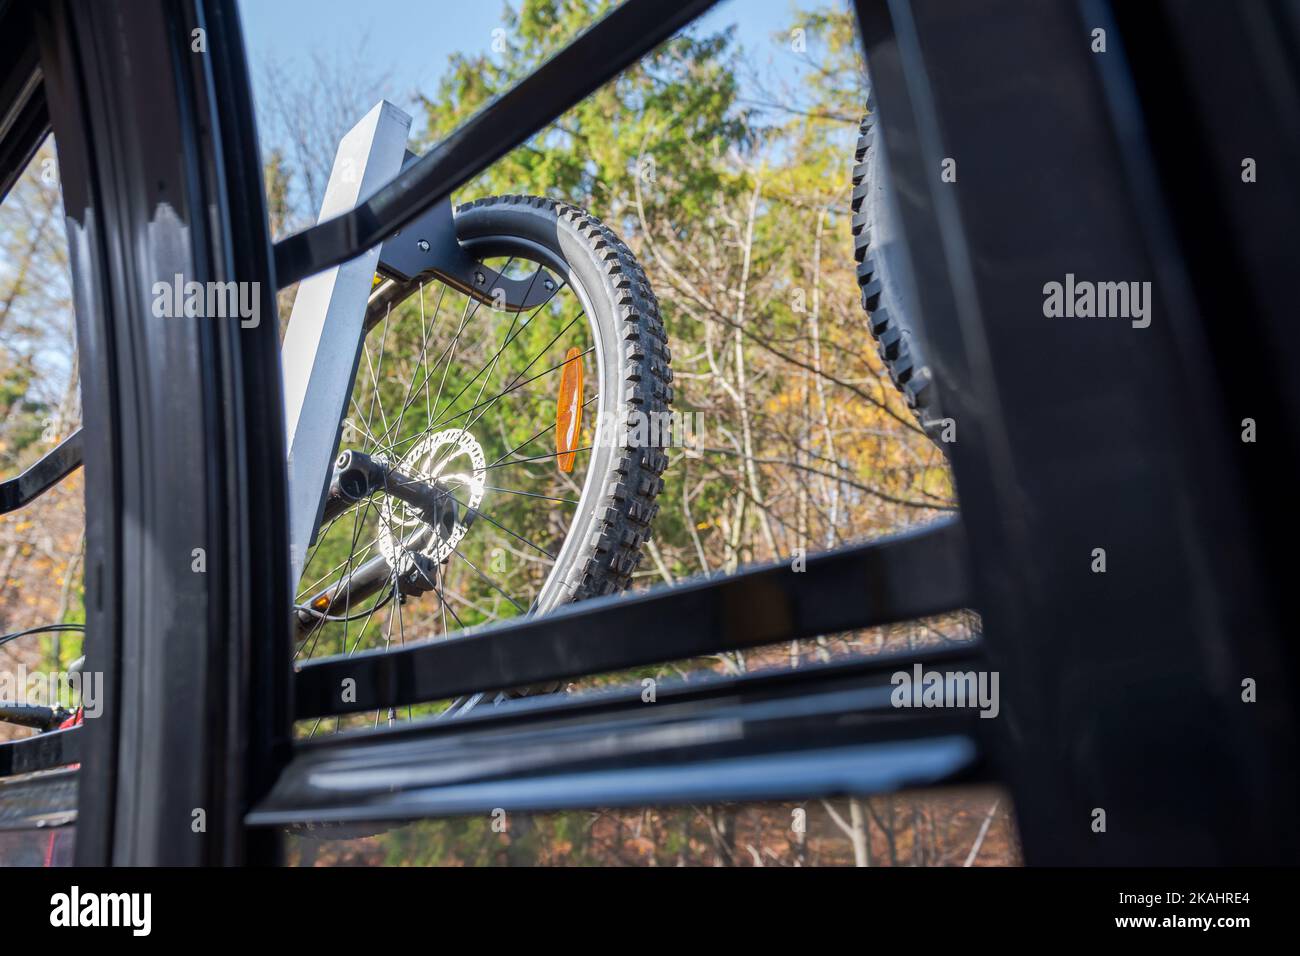 Rad des mtb-Fahrrads, das außerhalb des Wagens einer Bergbahn hängt, gesehen durch das offene Fenster der Gondel. Schöner, herbstlicher, sonniger Tag. Adventur Stockfoto